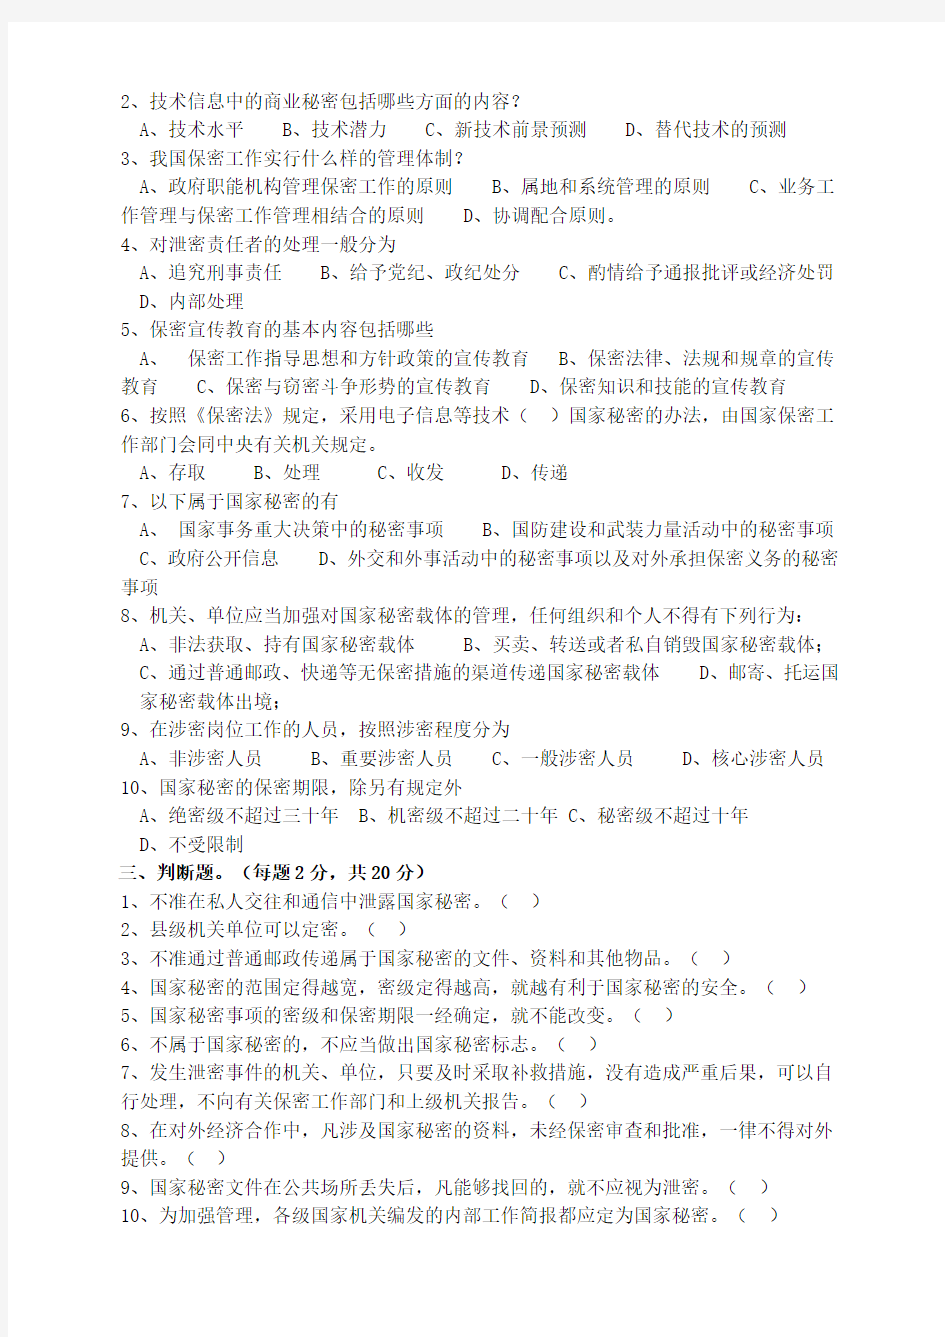 新修订《中华人民共和国保守国家秘密法》知识试题